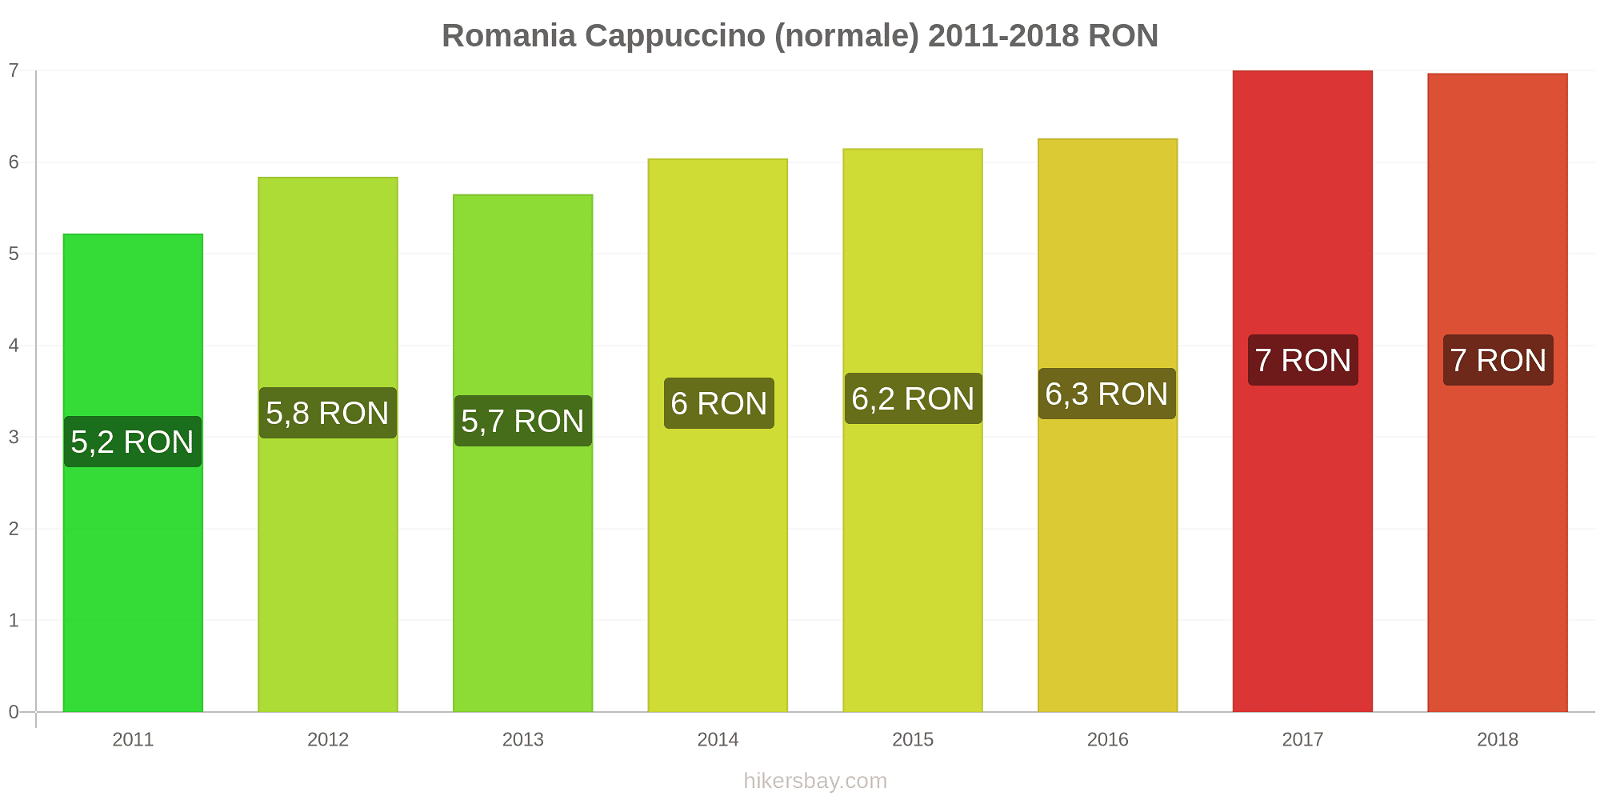 Romania cambi di prezzo Cappuccino hikersbay.com